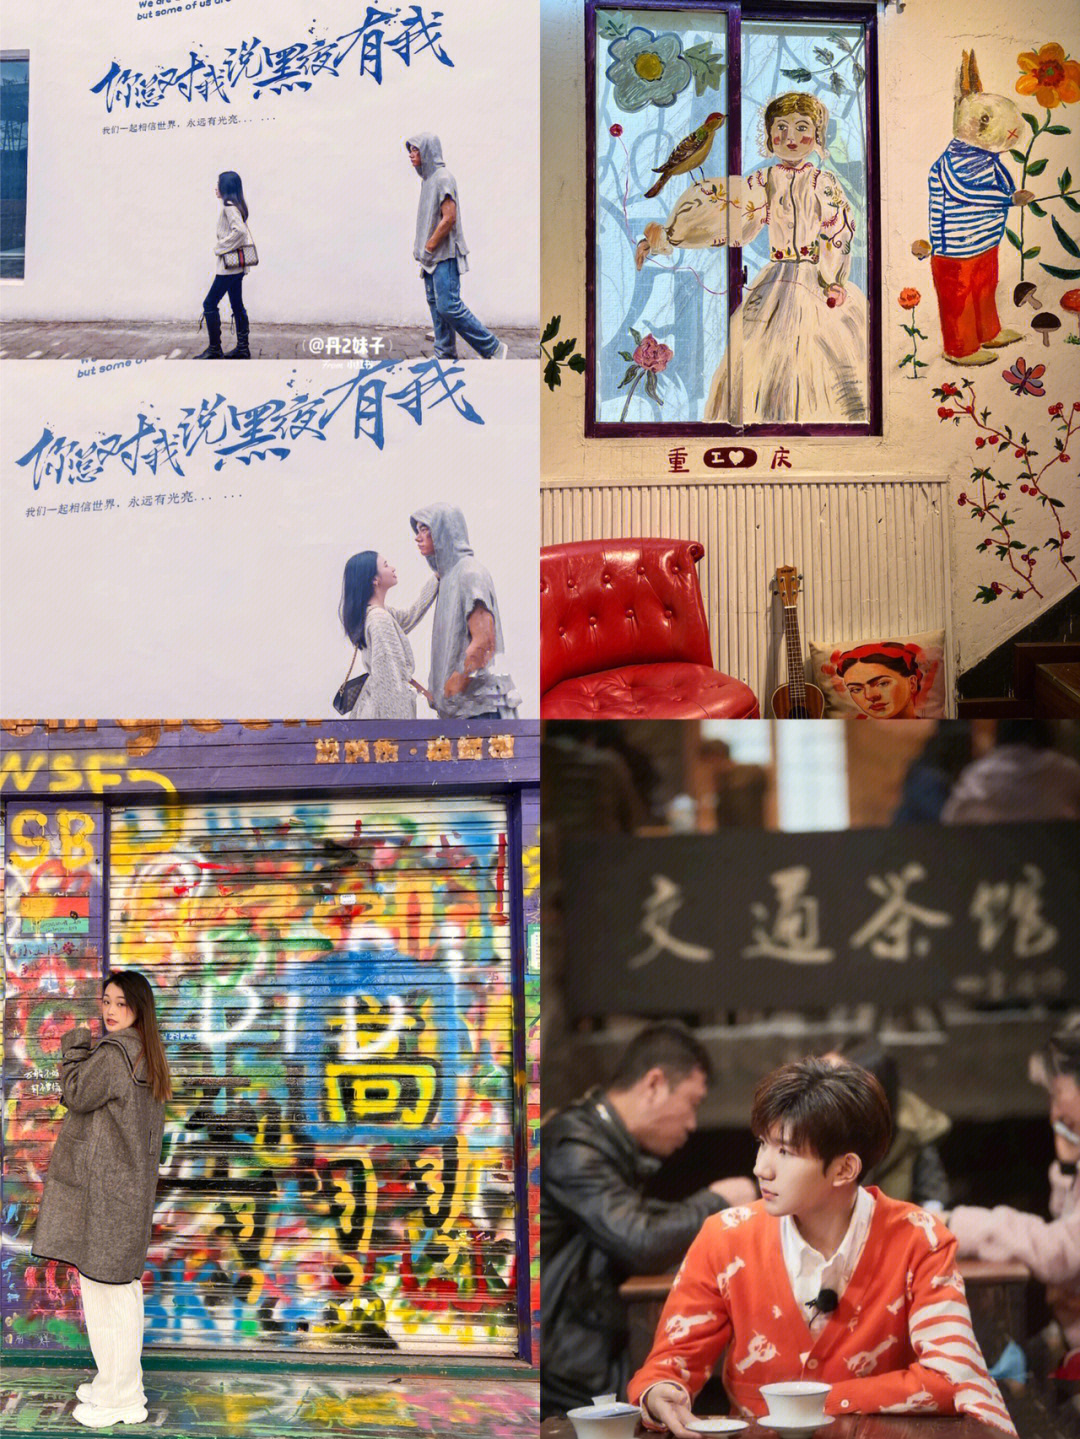 重庆旅游整条涂鸦街跟着王源肖战打卡